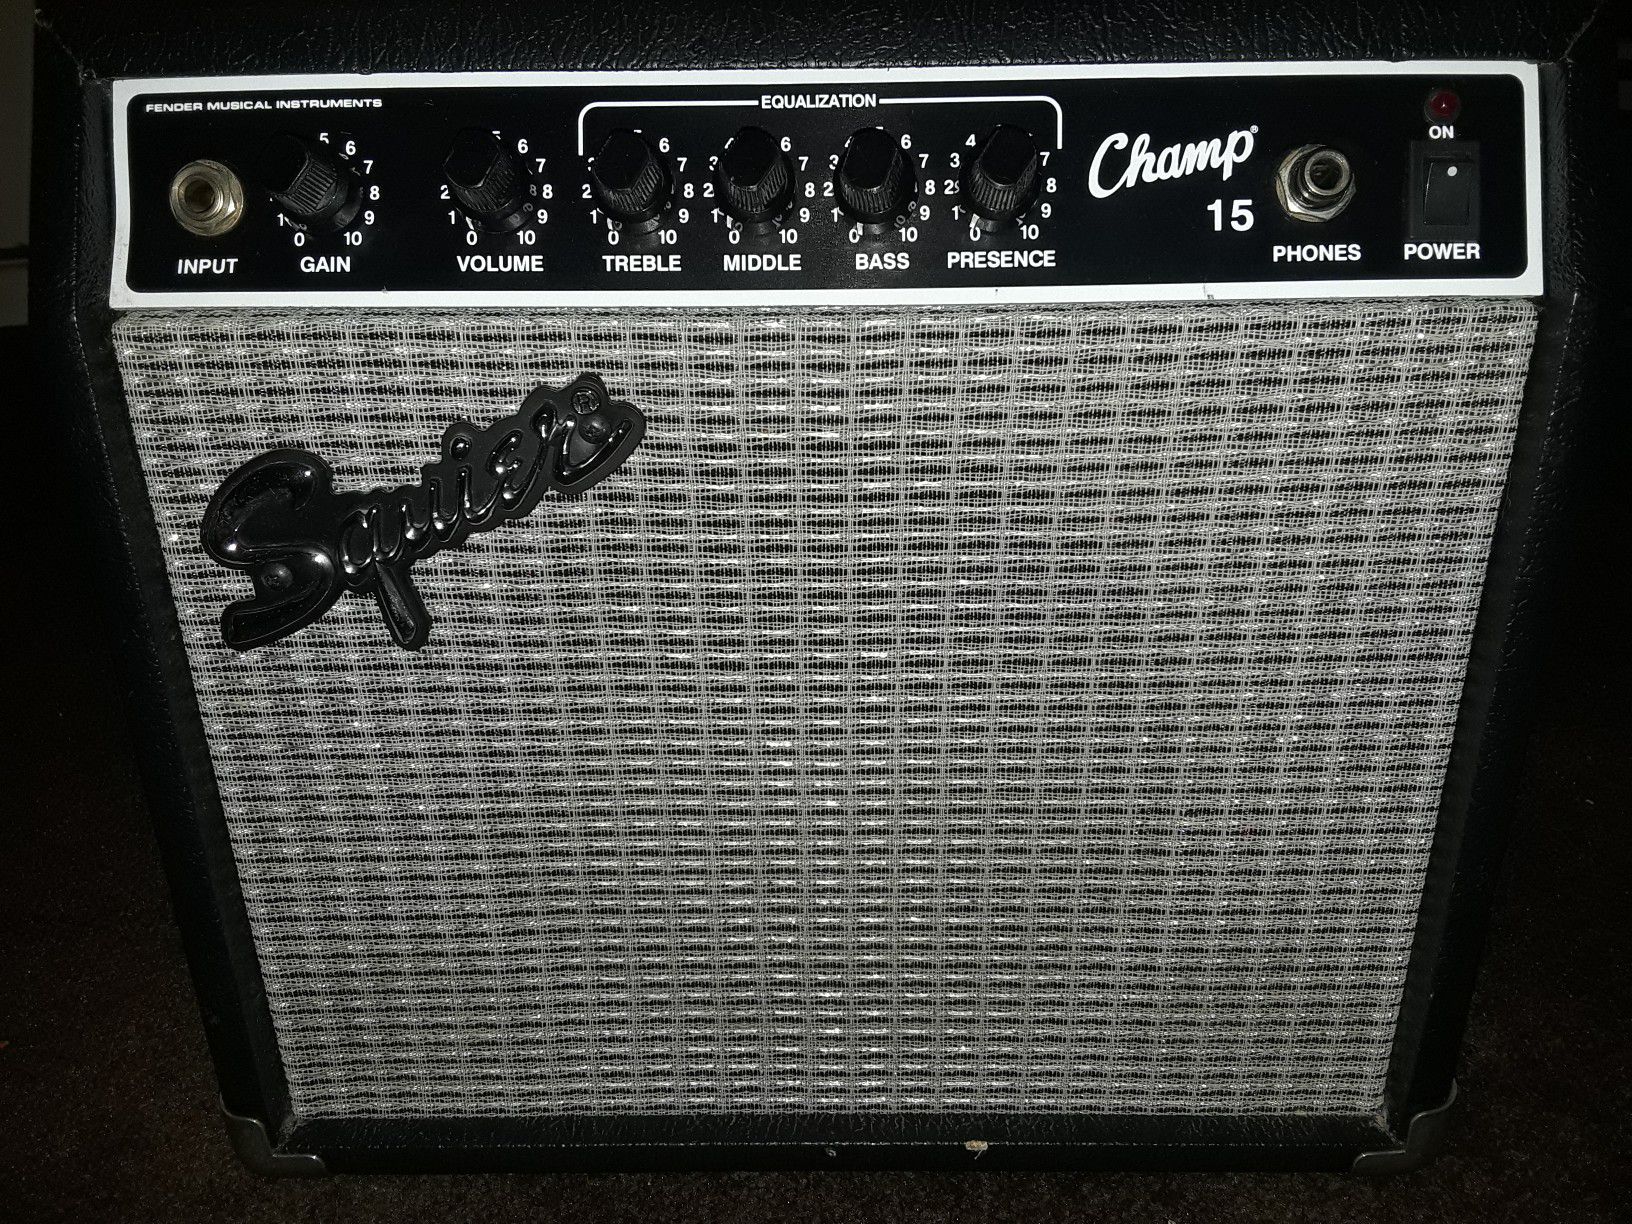 Squier Champ 15 guitar amplifier